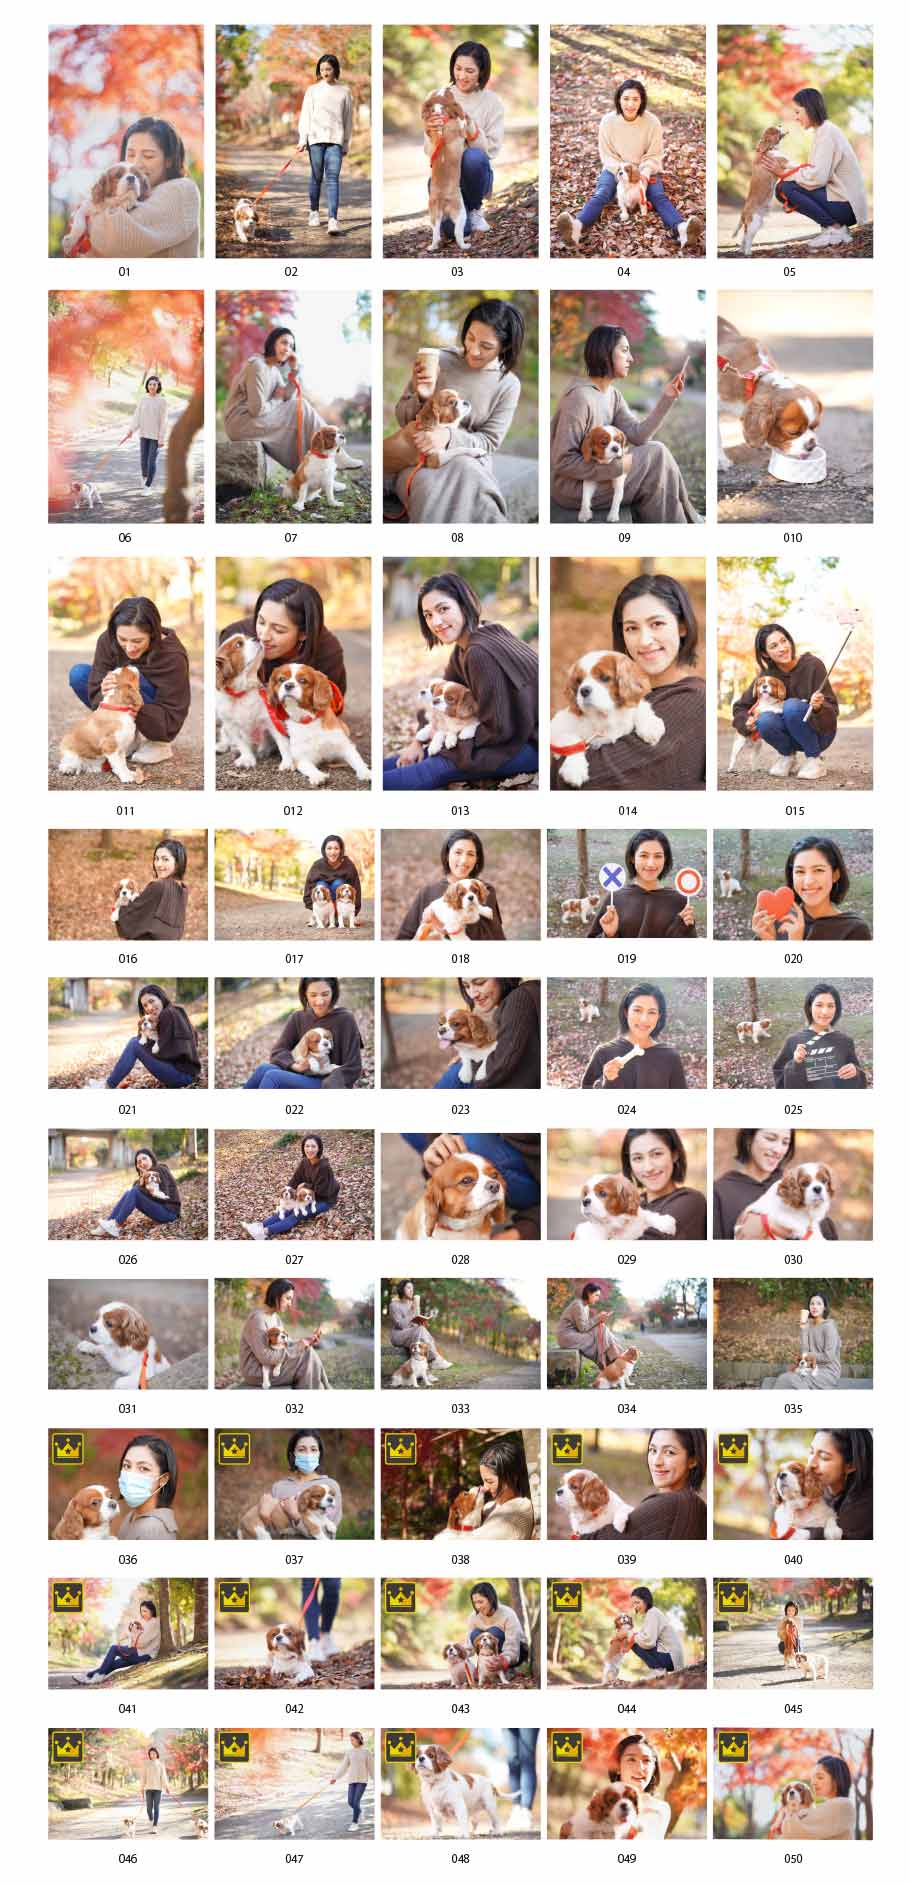 Photos of a woman who has a dog